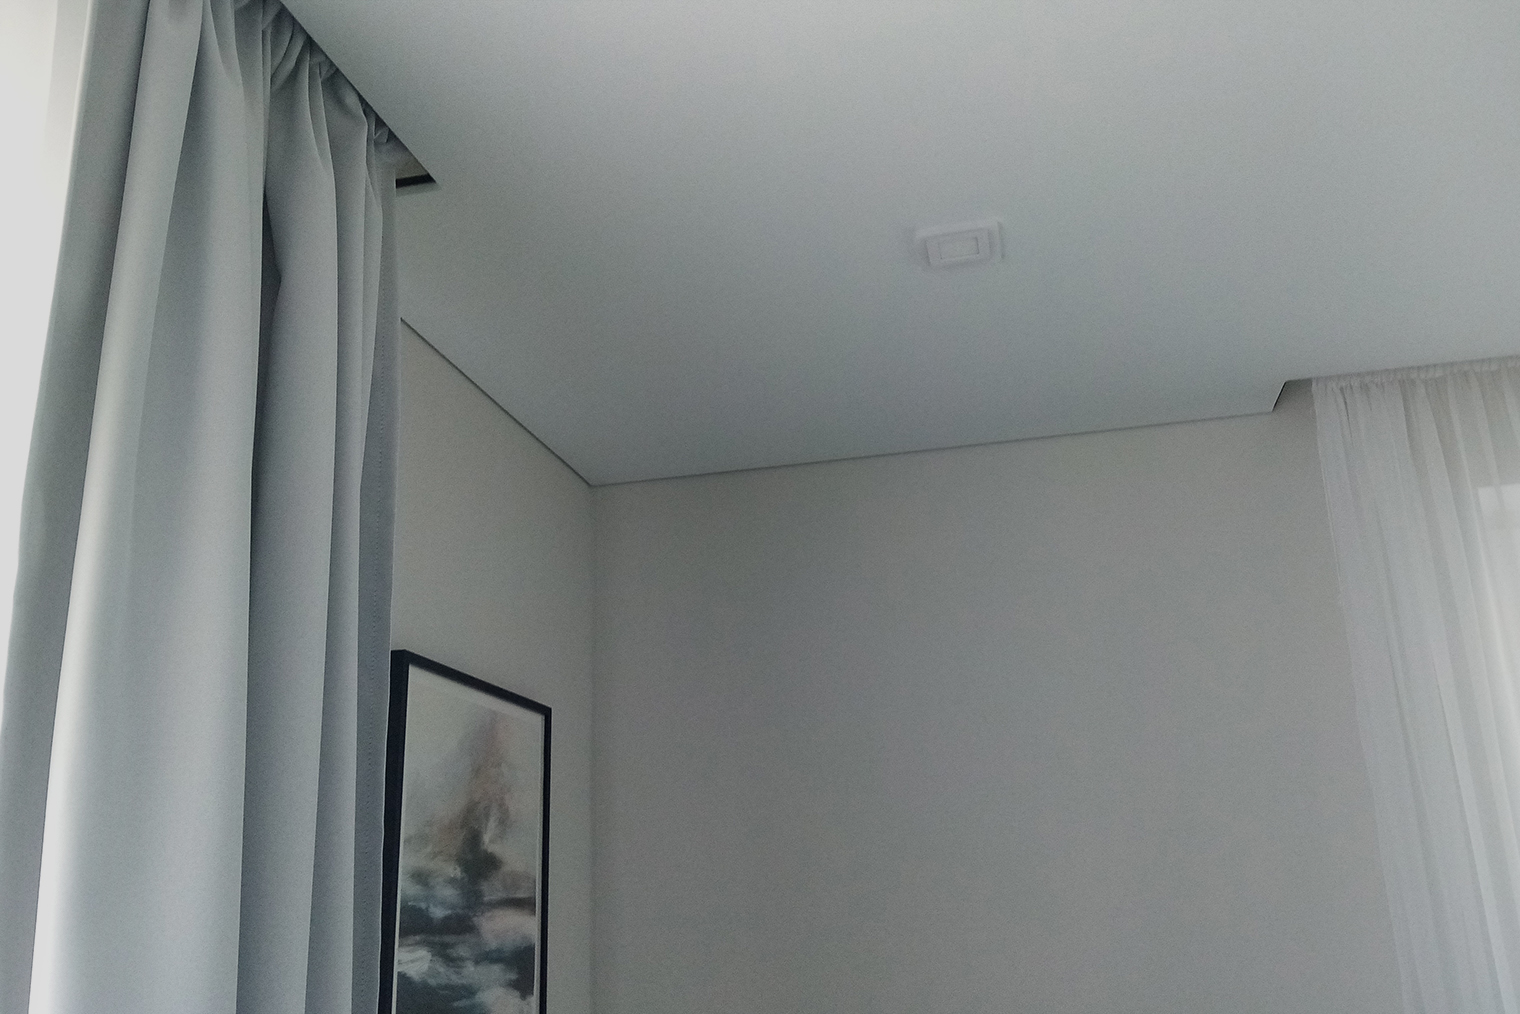 Вот такие у нас потолки: на этом фото спальня, но так сделано по всей квартире. Видно, что потолок не примыкает к стене вплотную